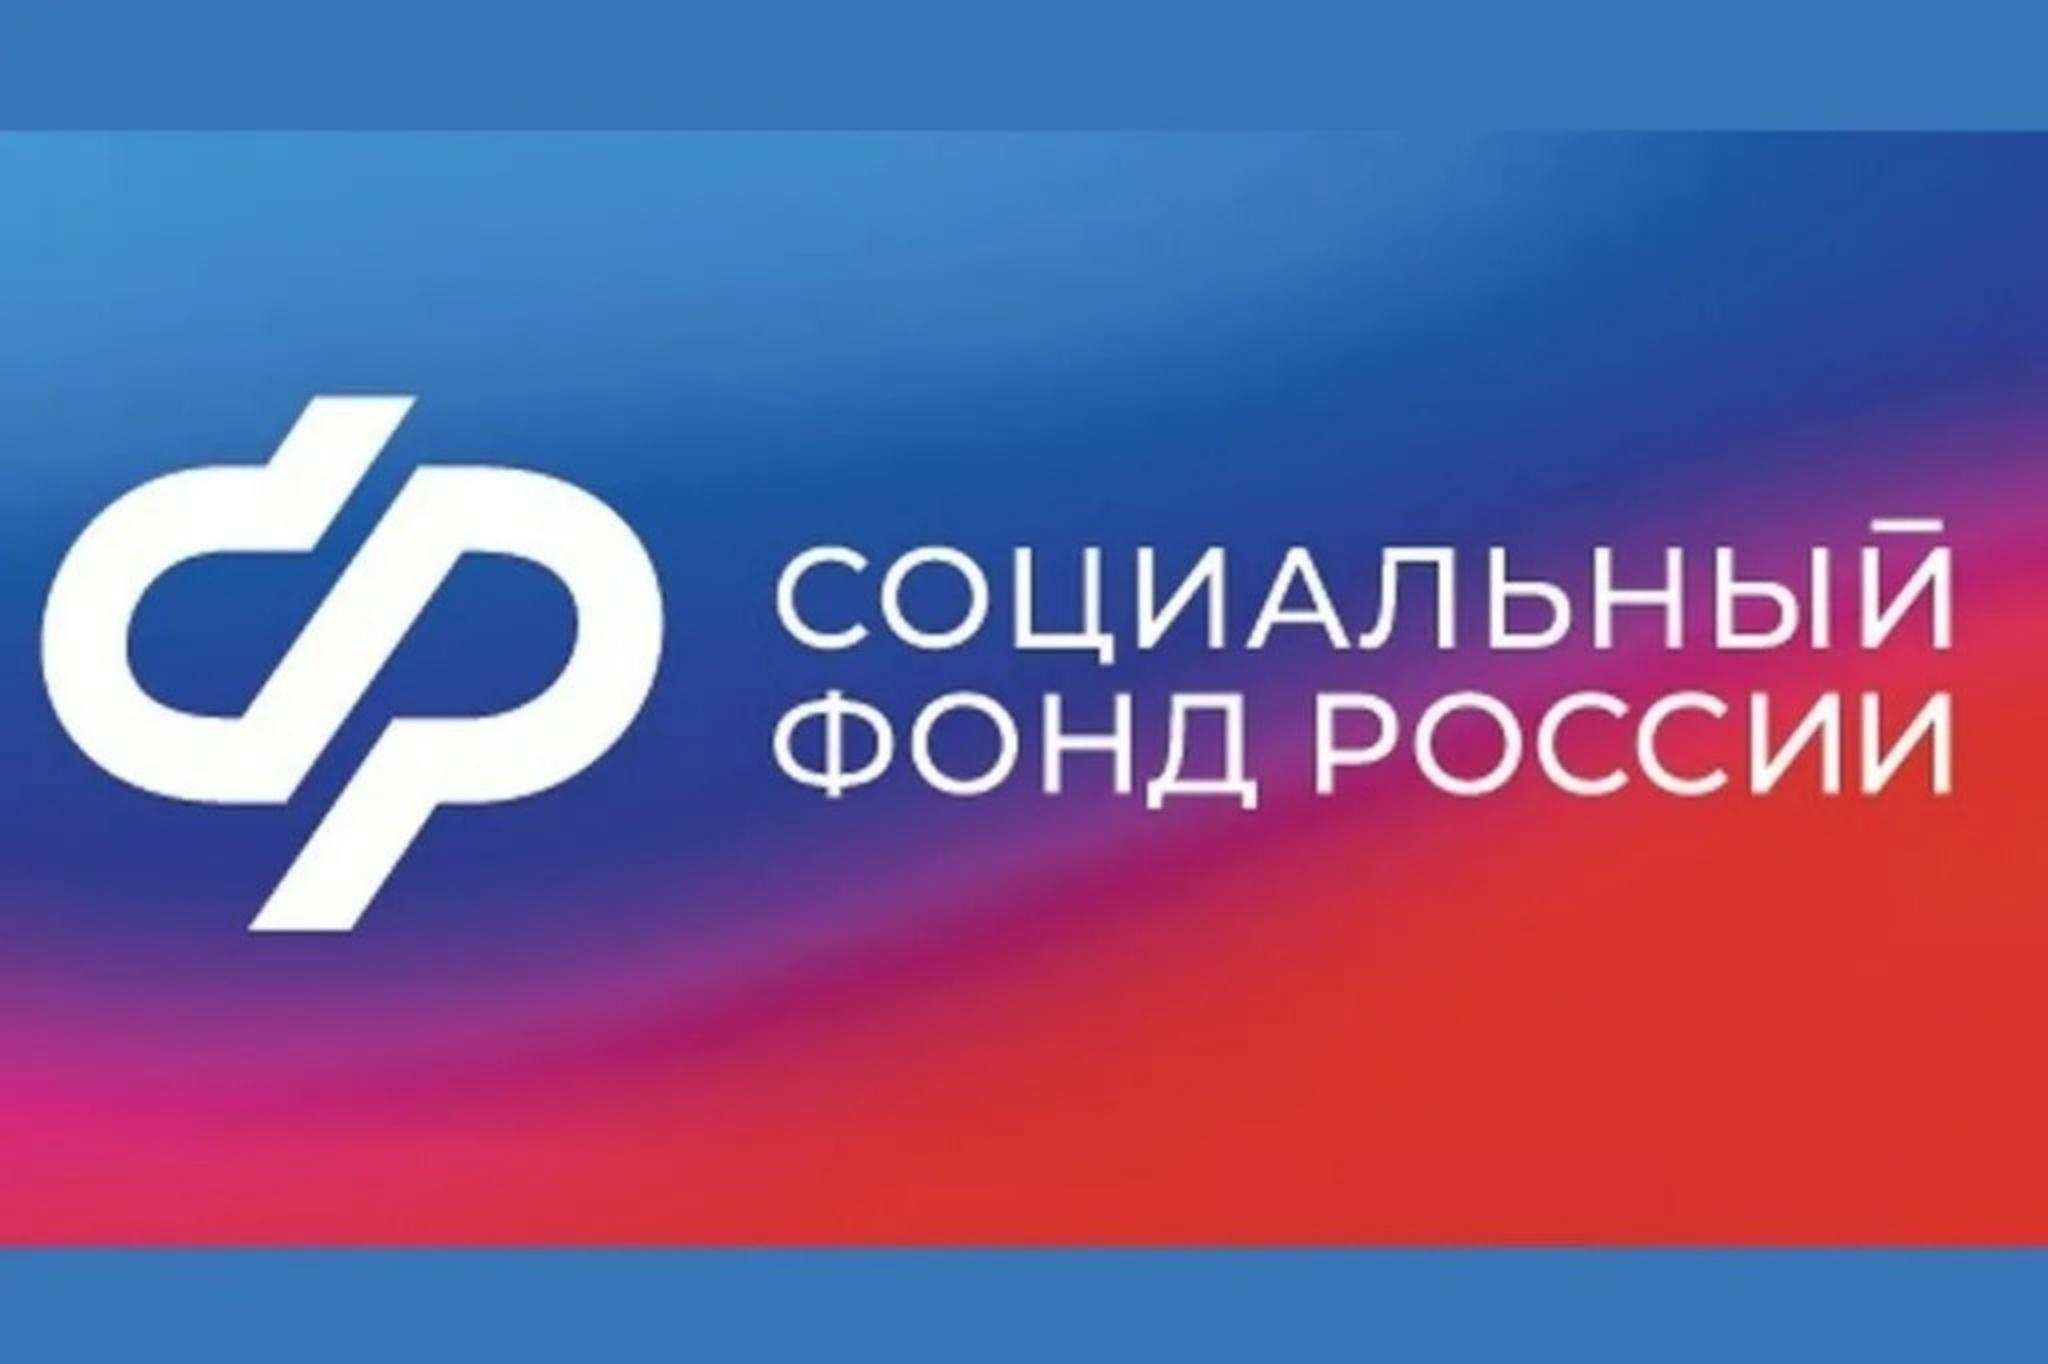 28,8 тыс. человек обеспечило техническими средствами реабилитации отделение Социального фонда по Нижегородской области 